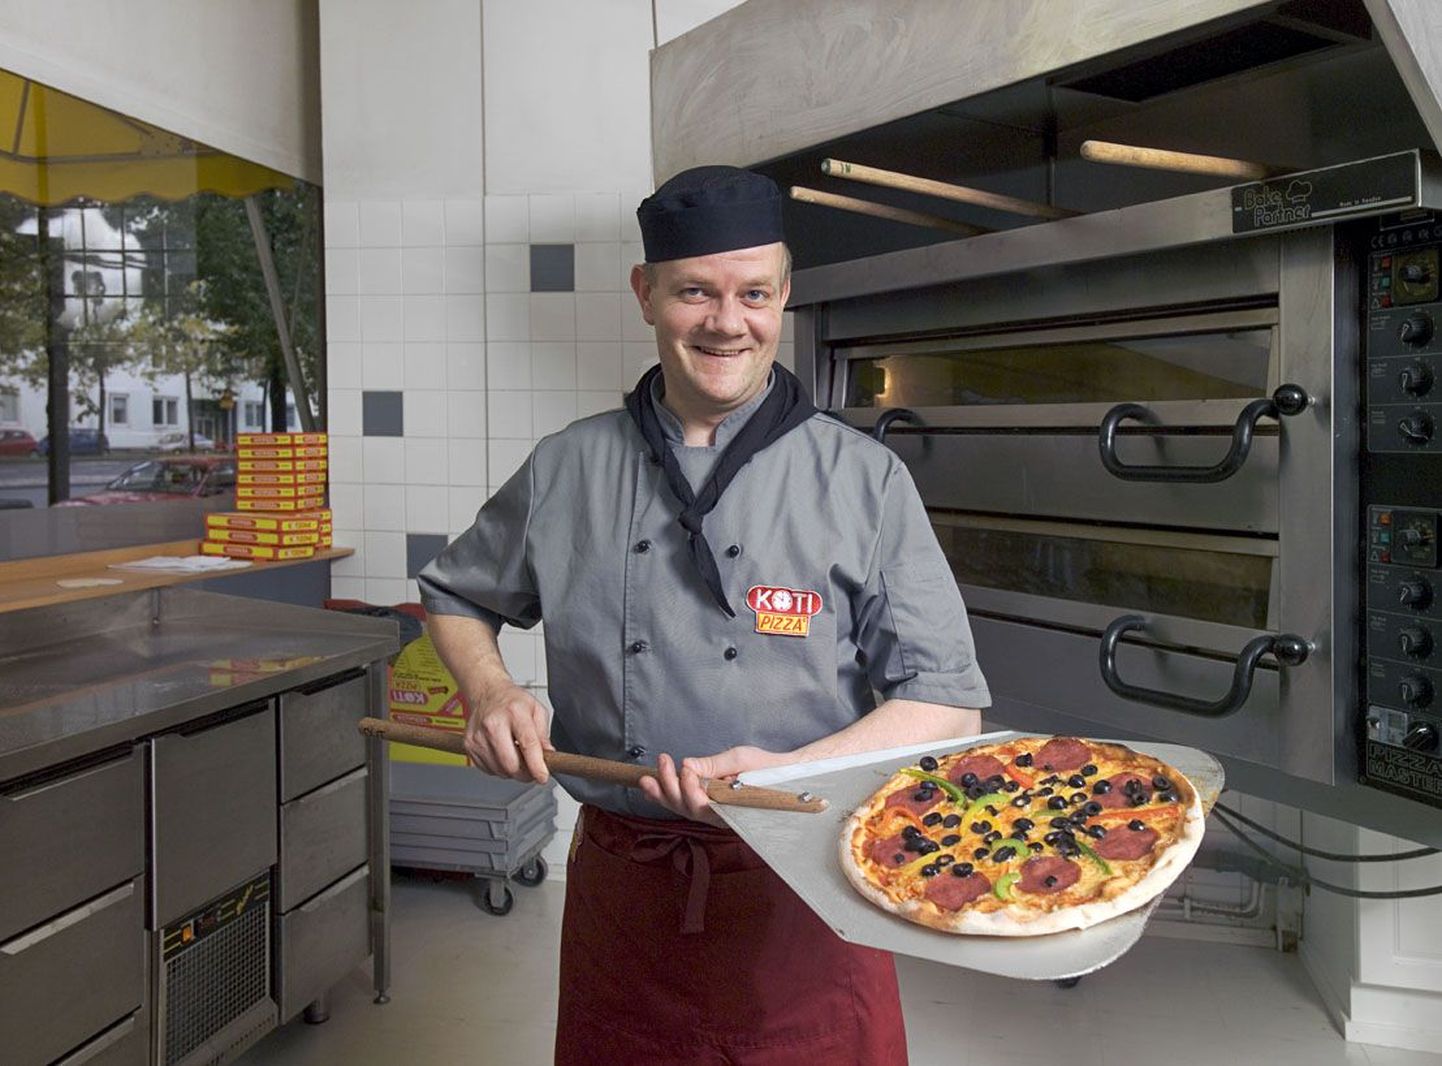 Soome pitsakett Kotipizza plaanis mõni aeg tagasi avada Tallinnas 14 pitsakauplust.